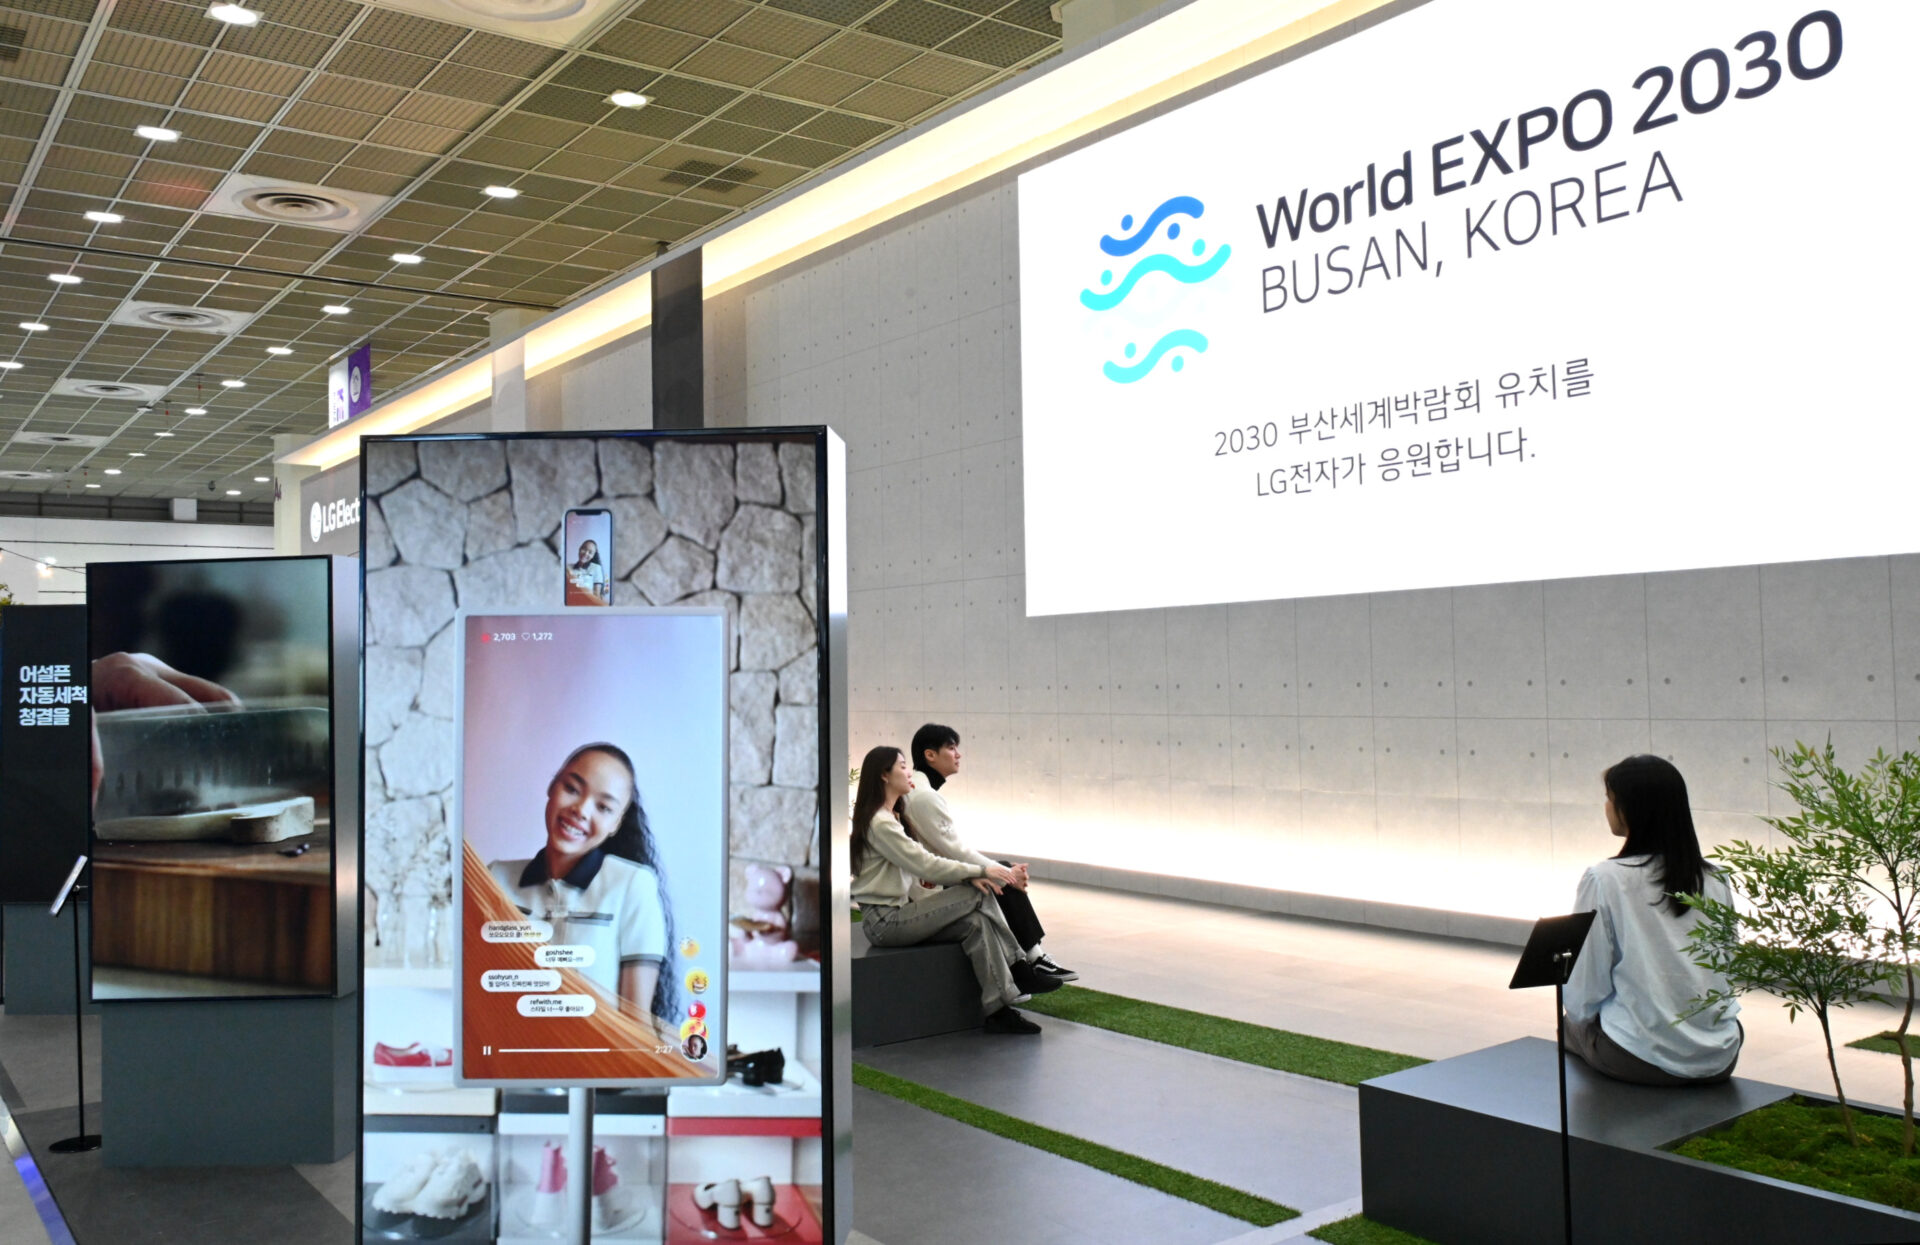 24일부터 나흘간 서울 코엑스에서 열리는 제54회 한국전자전에서 LG전자가 '2030 부산세계박람회’ 유치를 기원하는 홍보영상을 상영하고 있다.